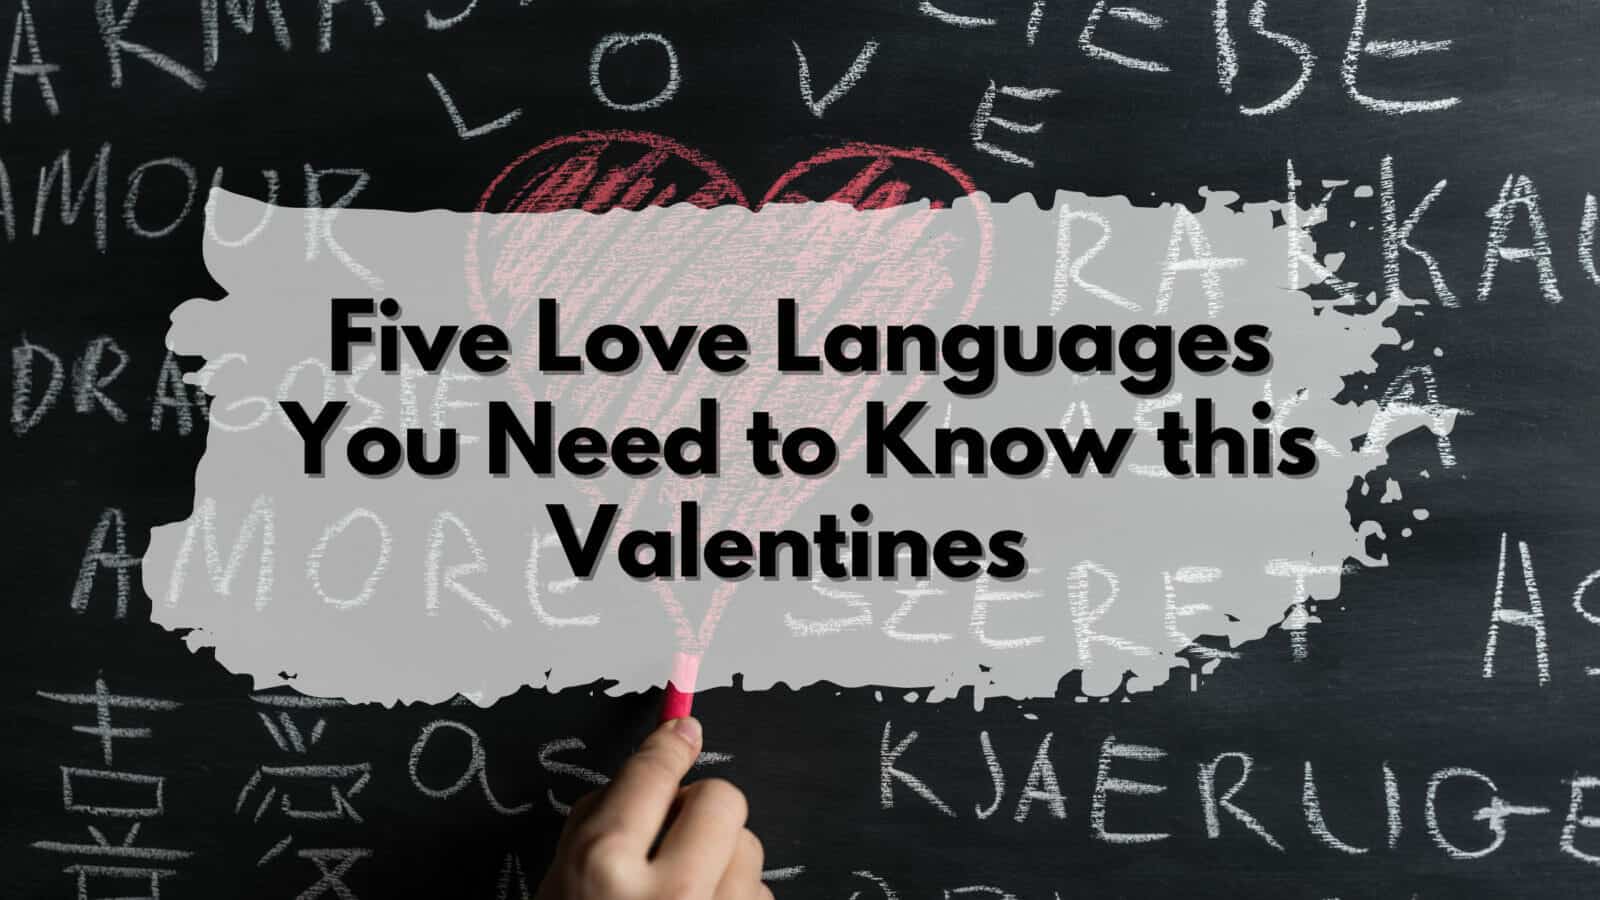 Love languages, Valentines